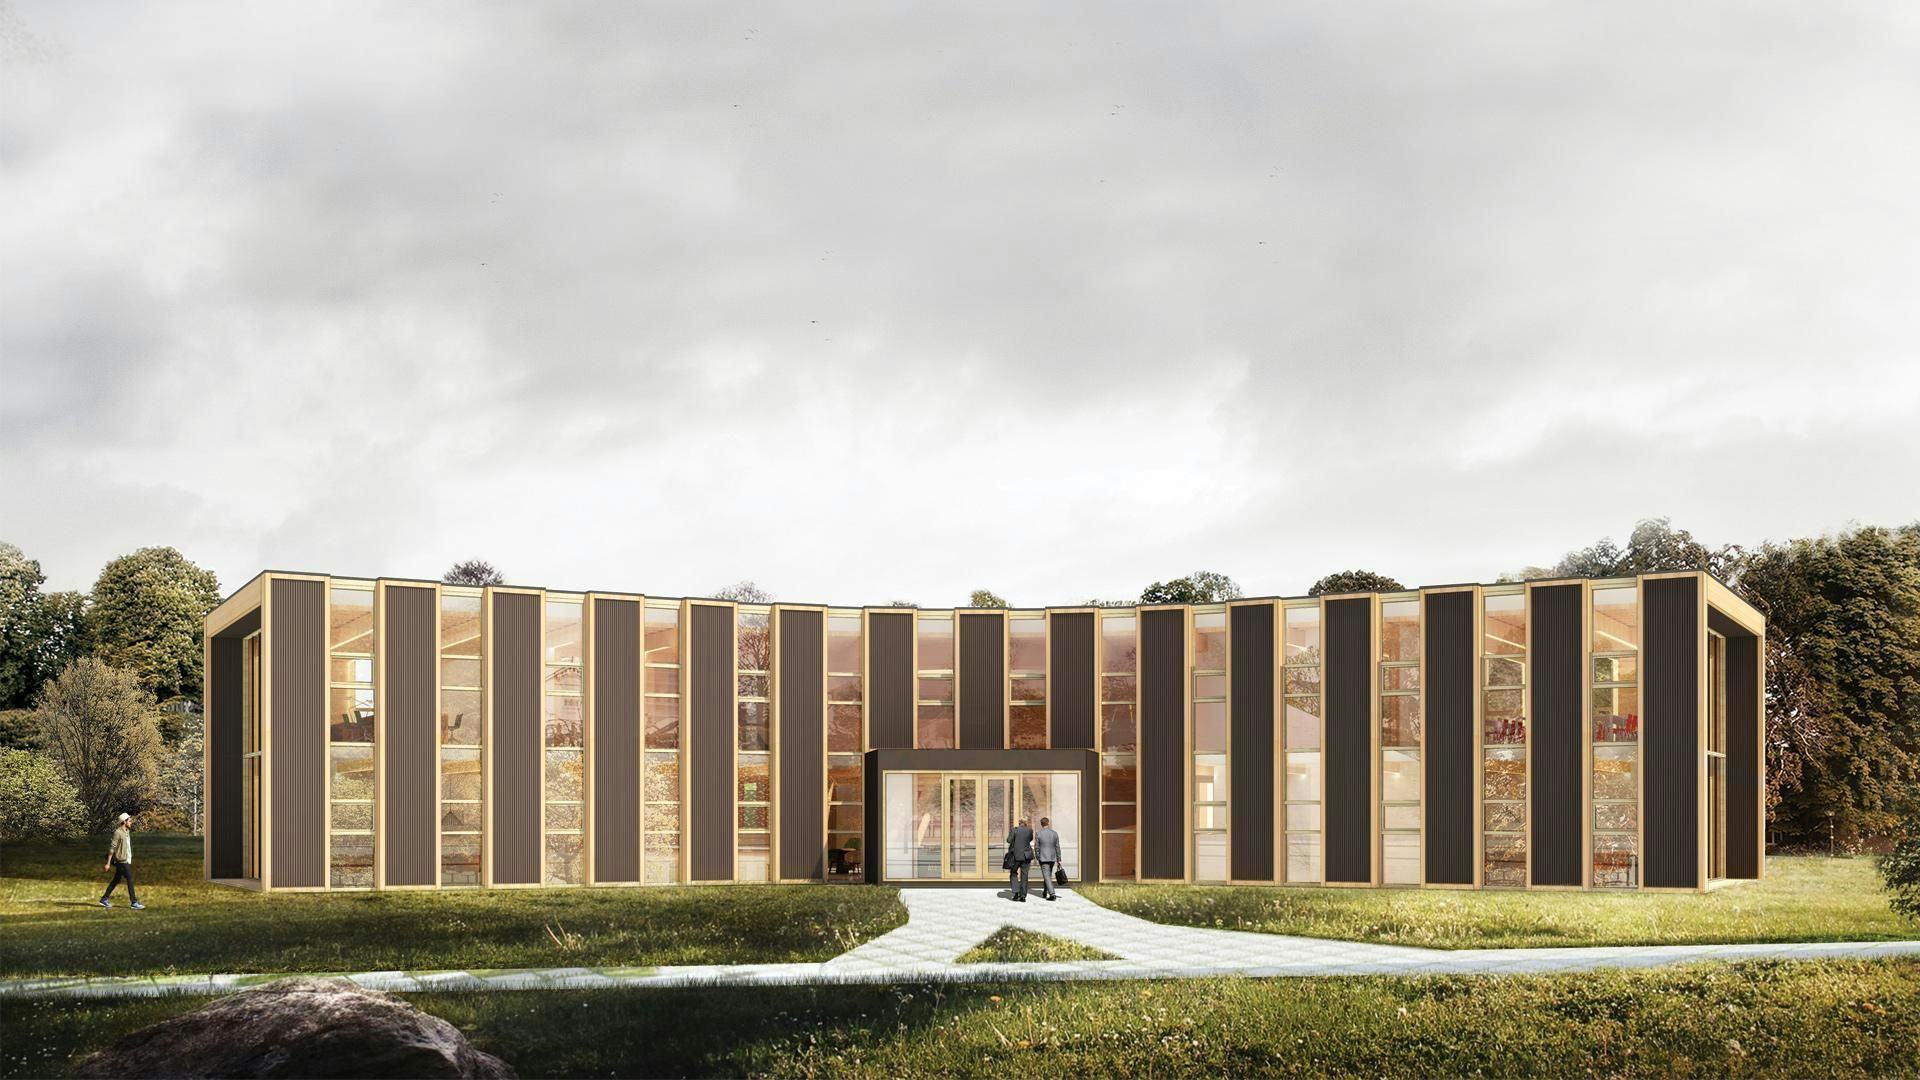 Het Biosintrum, een kenniscentrum voor biobased bouwen is de winnaar van De Nederlandse Bouwprijs 2019 in de categorie gebouwen. Paul de Ruiter Architects is de architect van het gebouw